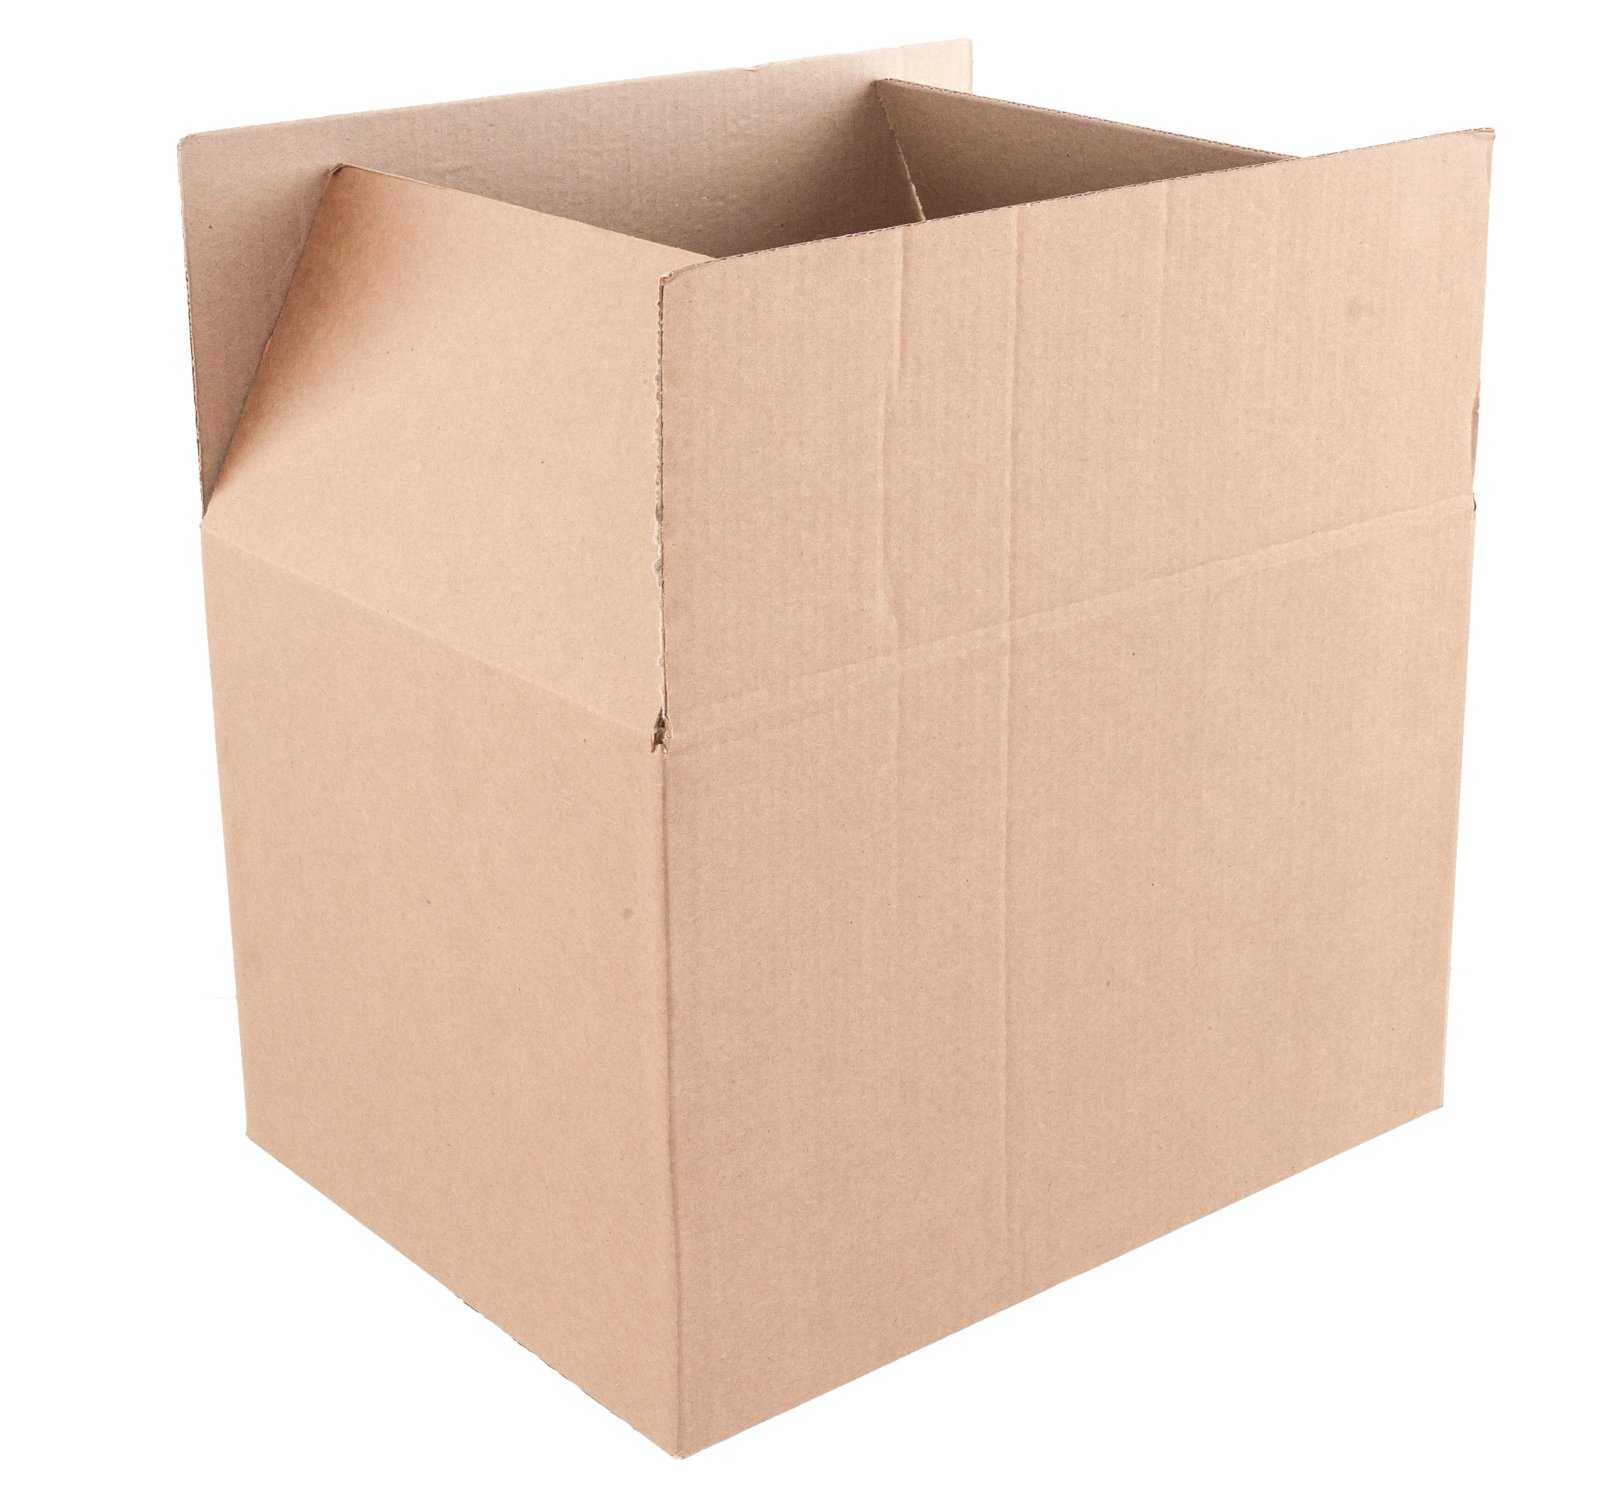 Универсальная многоцелевая коробка бурого цвета 39х30х26 см, отлично подойдет как для упаковки документов и бумаг формата А4, так и для хранения вещей на полках стеллажей. Изготовлен из бурого трехслойного картона марки Т-23. В упаковке 20 штук.